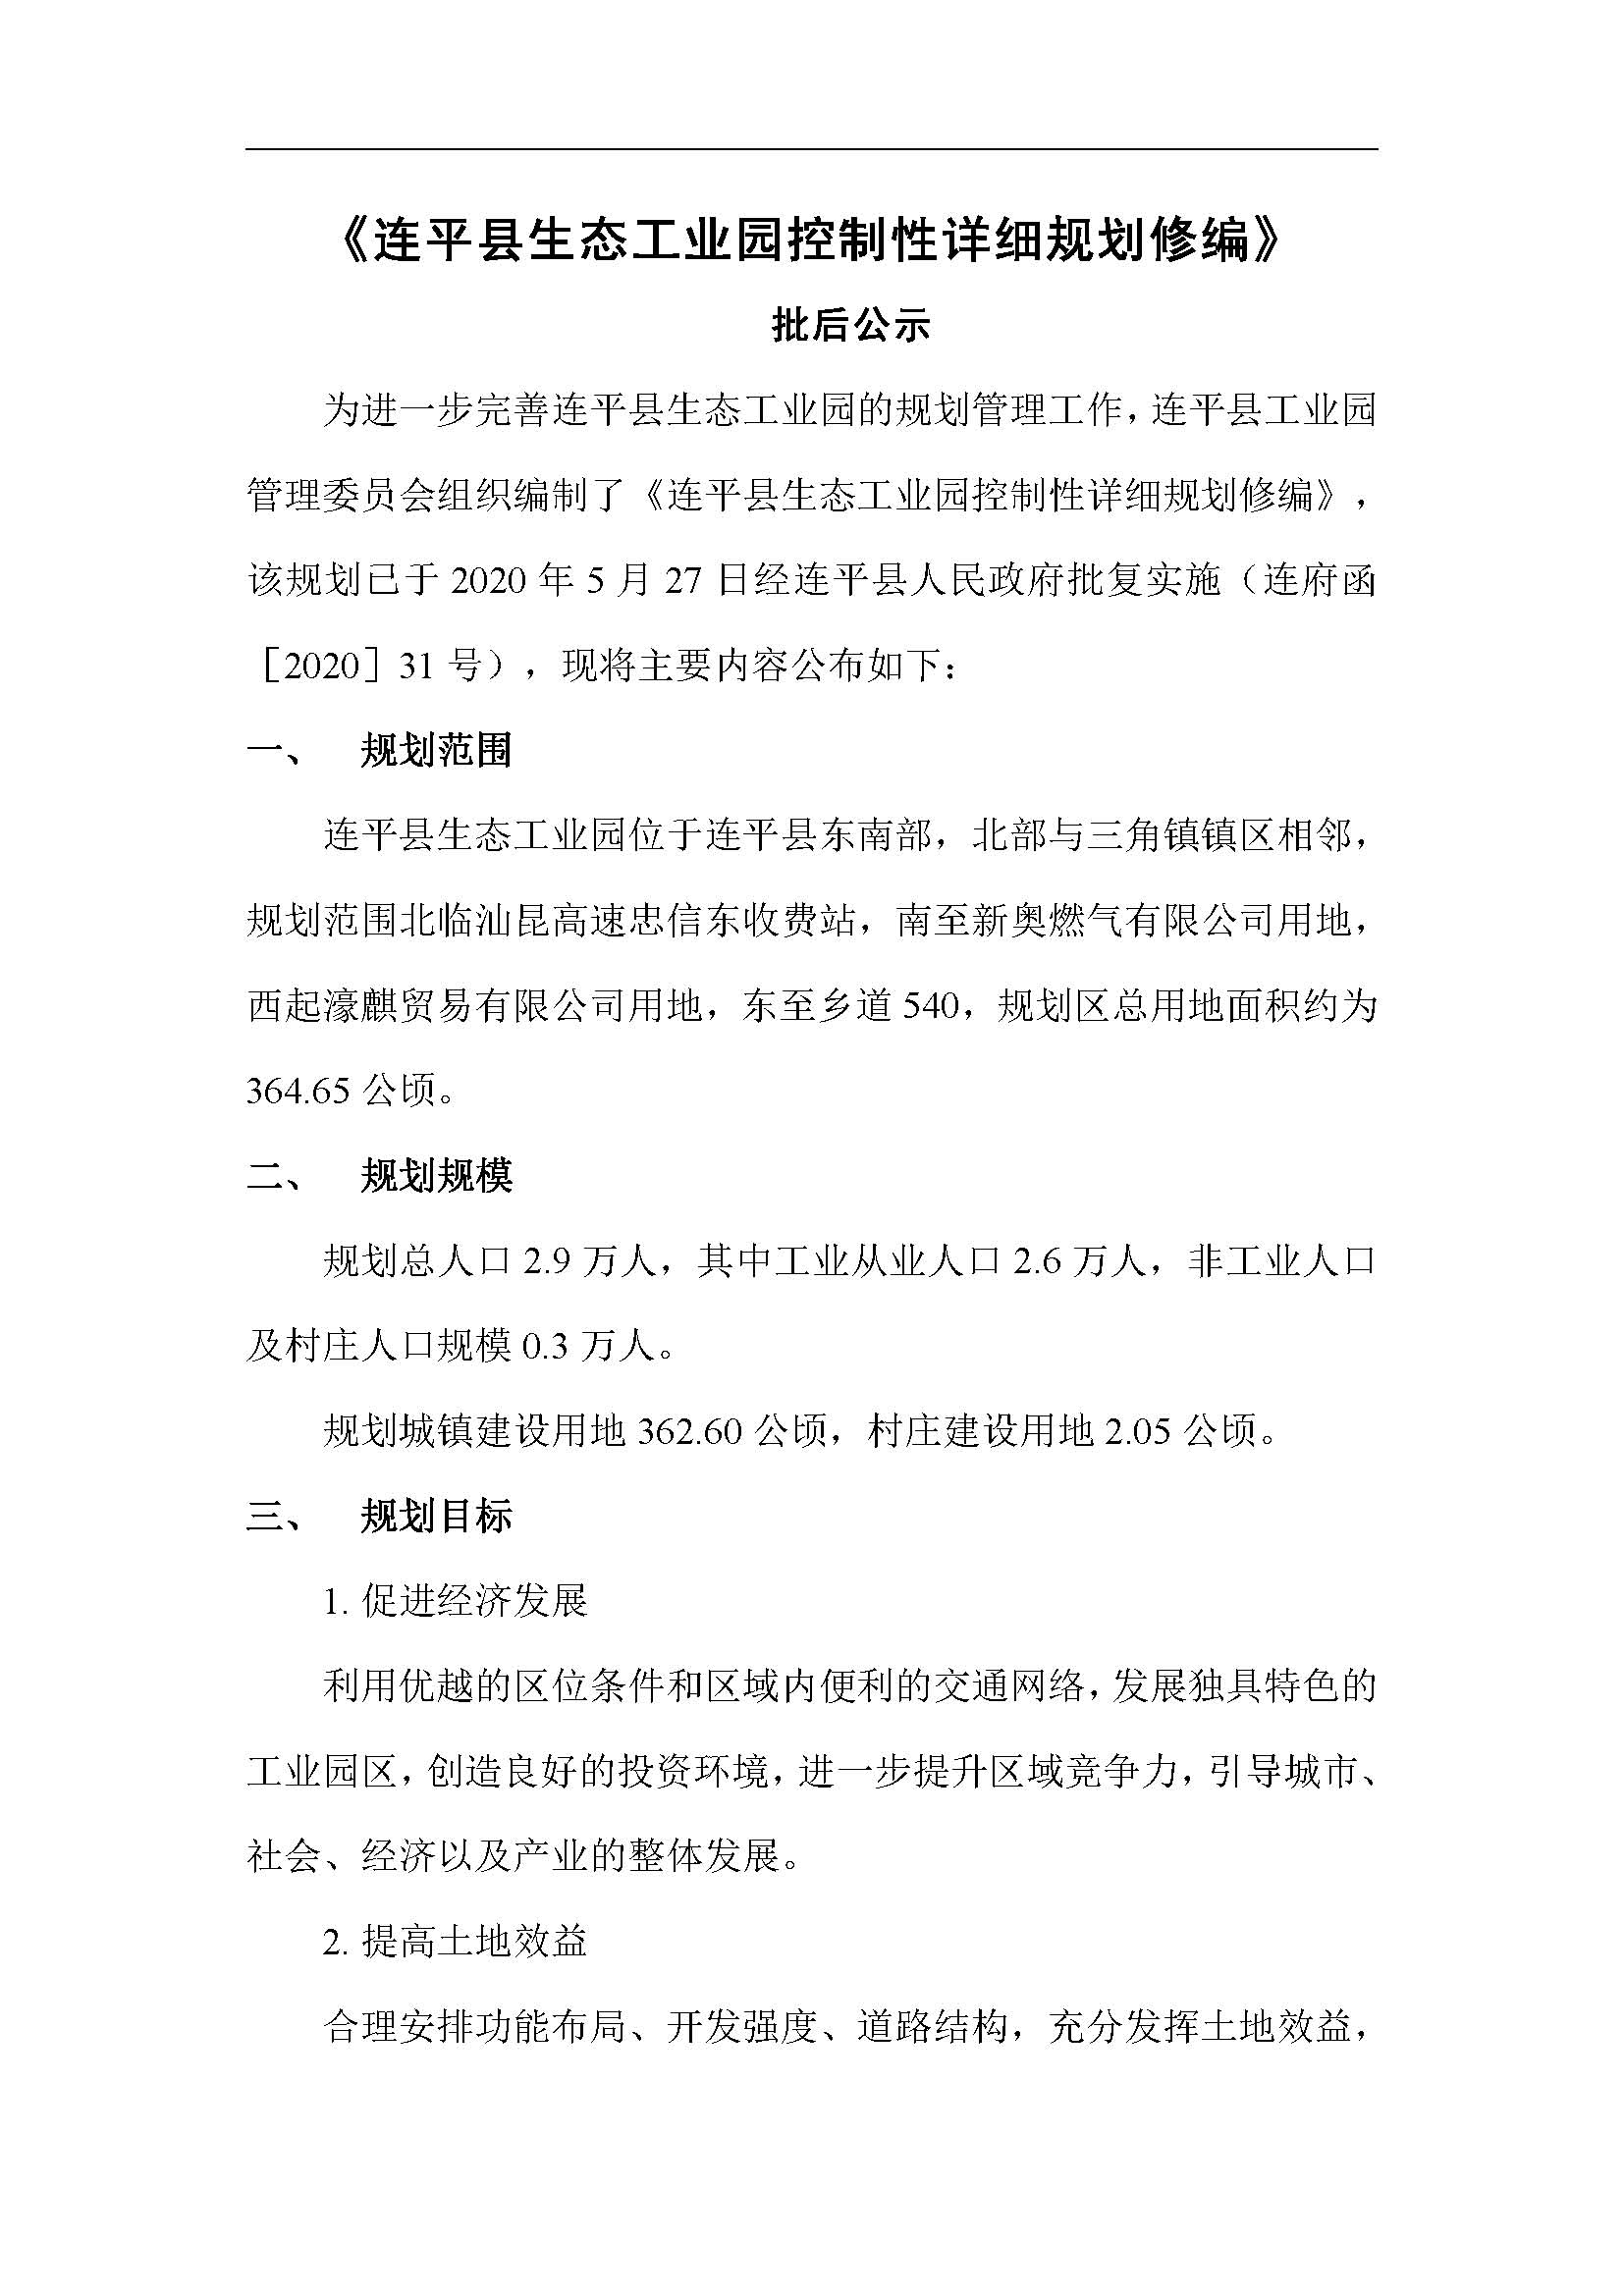 连平县生态工业园控制性详细规划修编——批后公示_页面_04.jpg